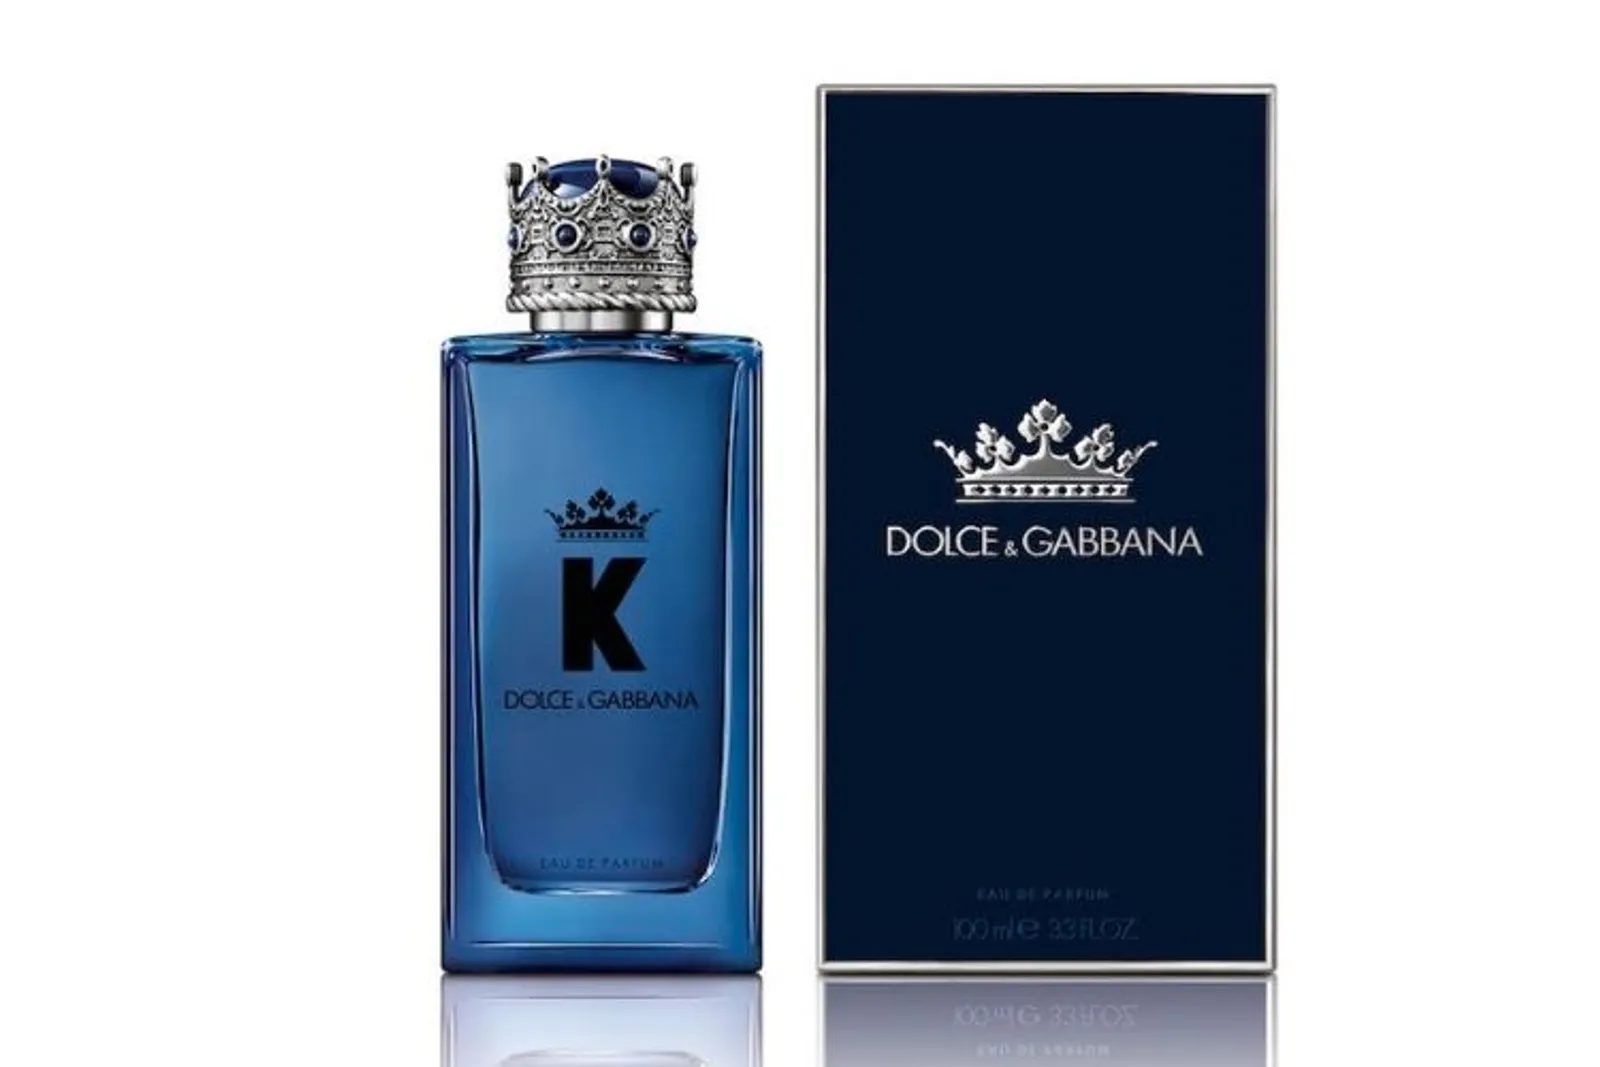 K by Dolce & Gabanna, Parfum Raja dengan Wangi Maskulin